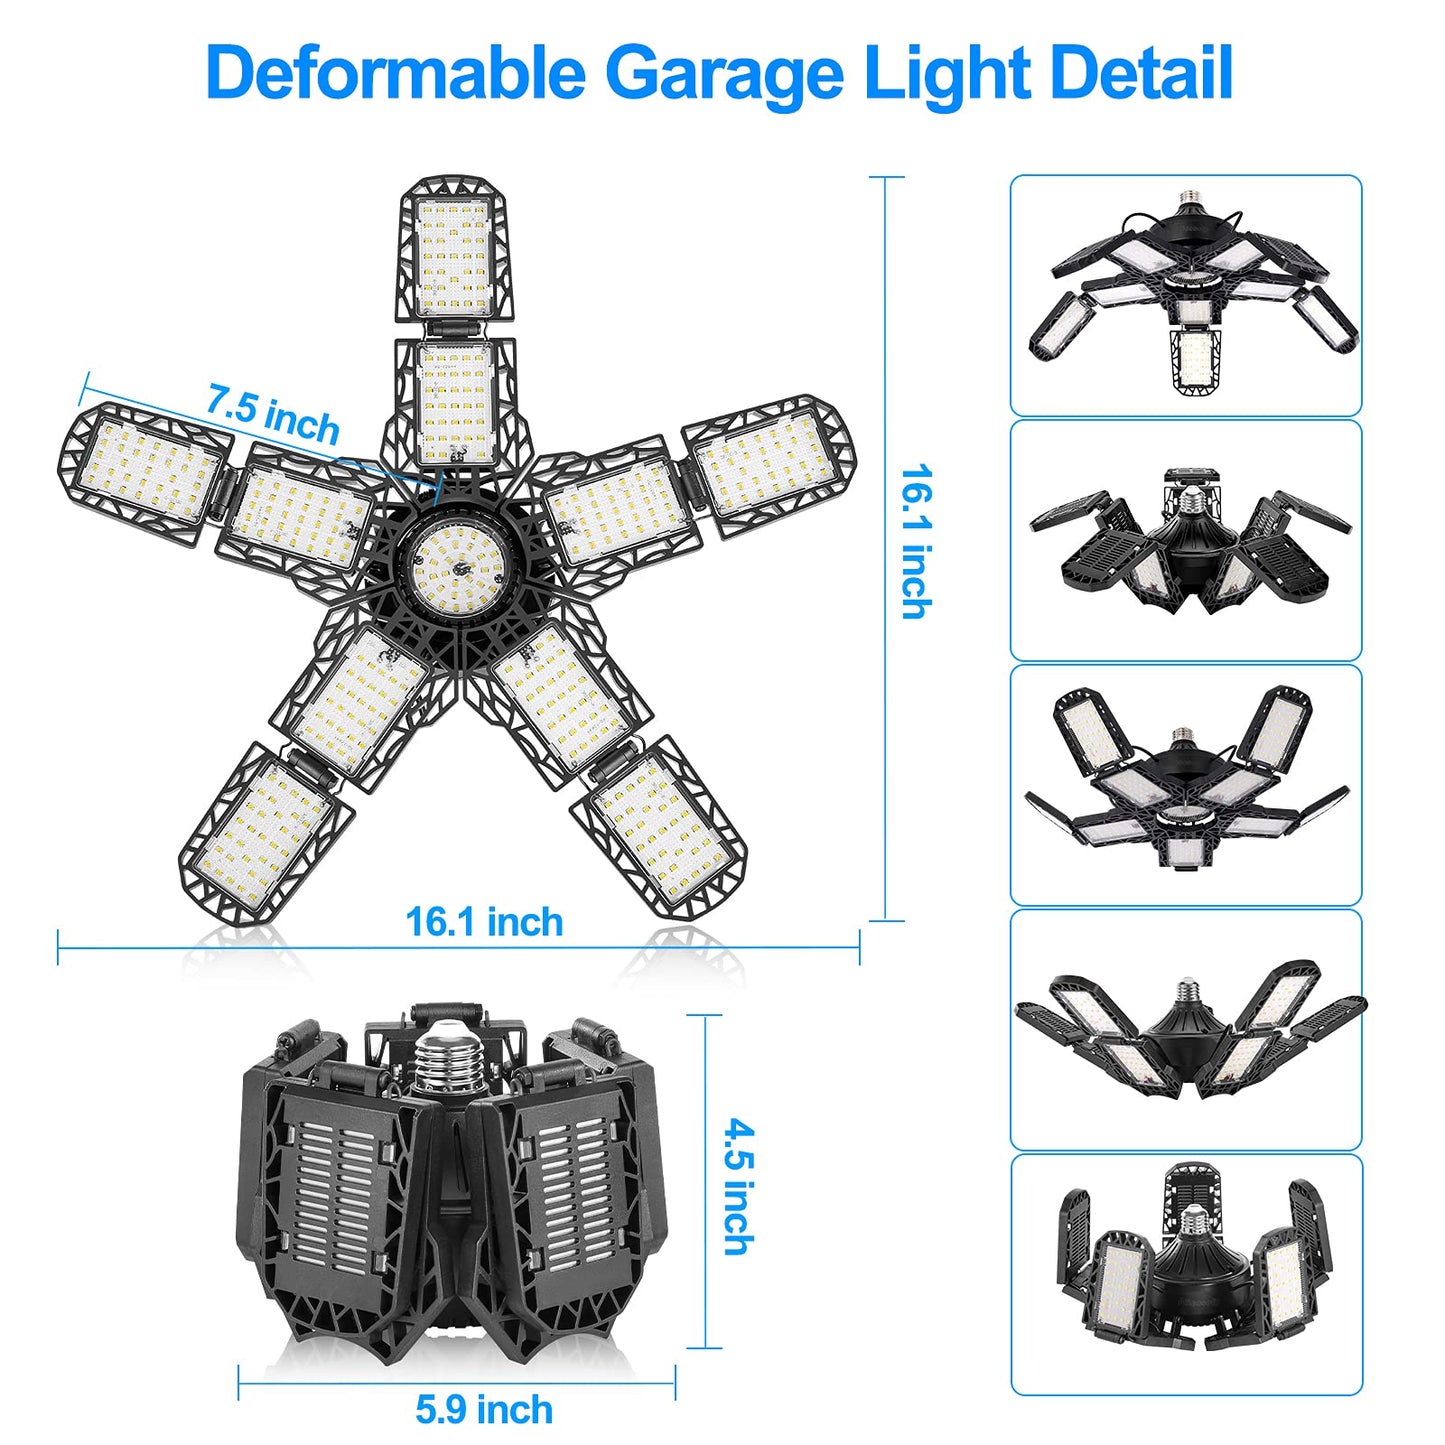 LED Garage Lights with 8 Adjustable Panels